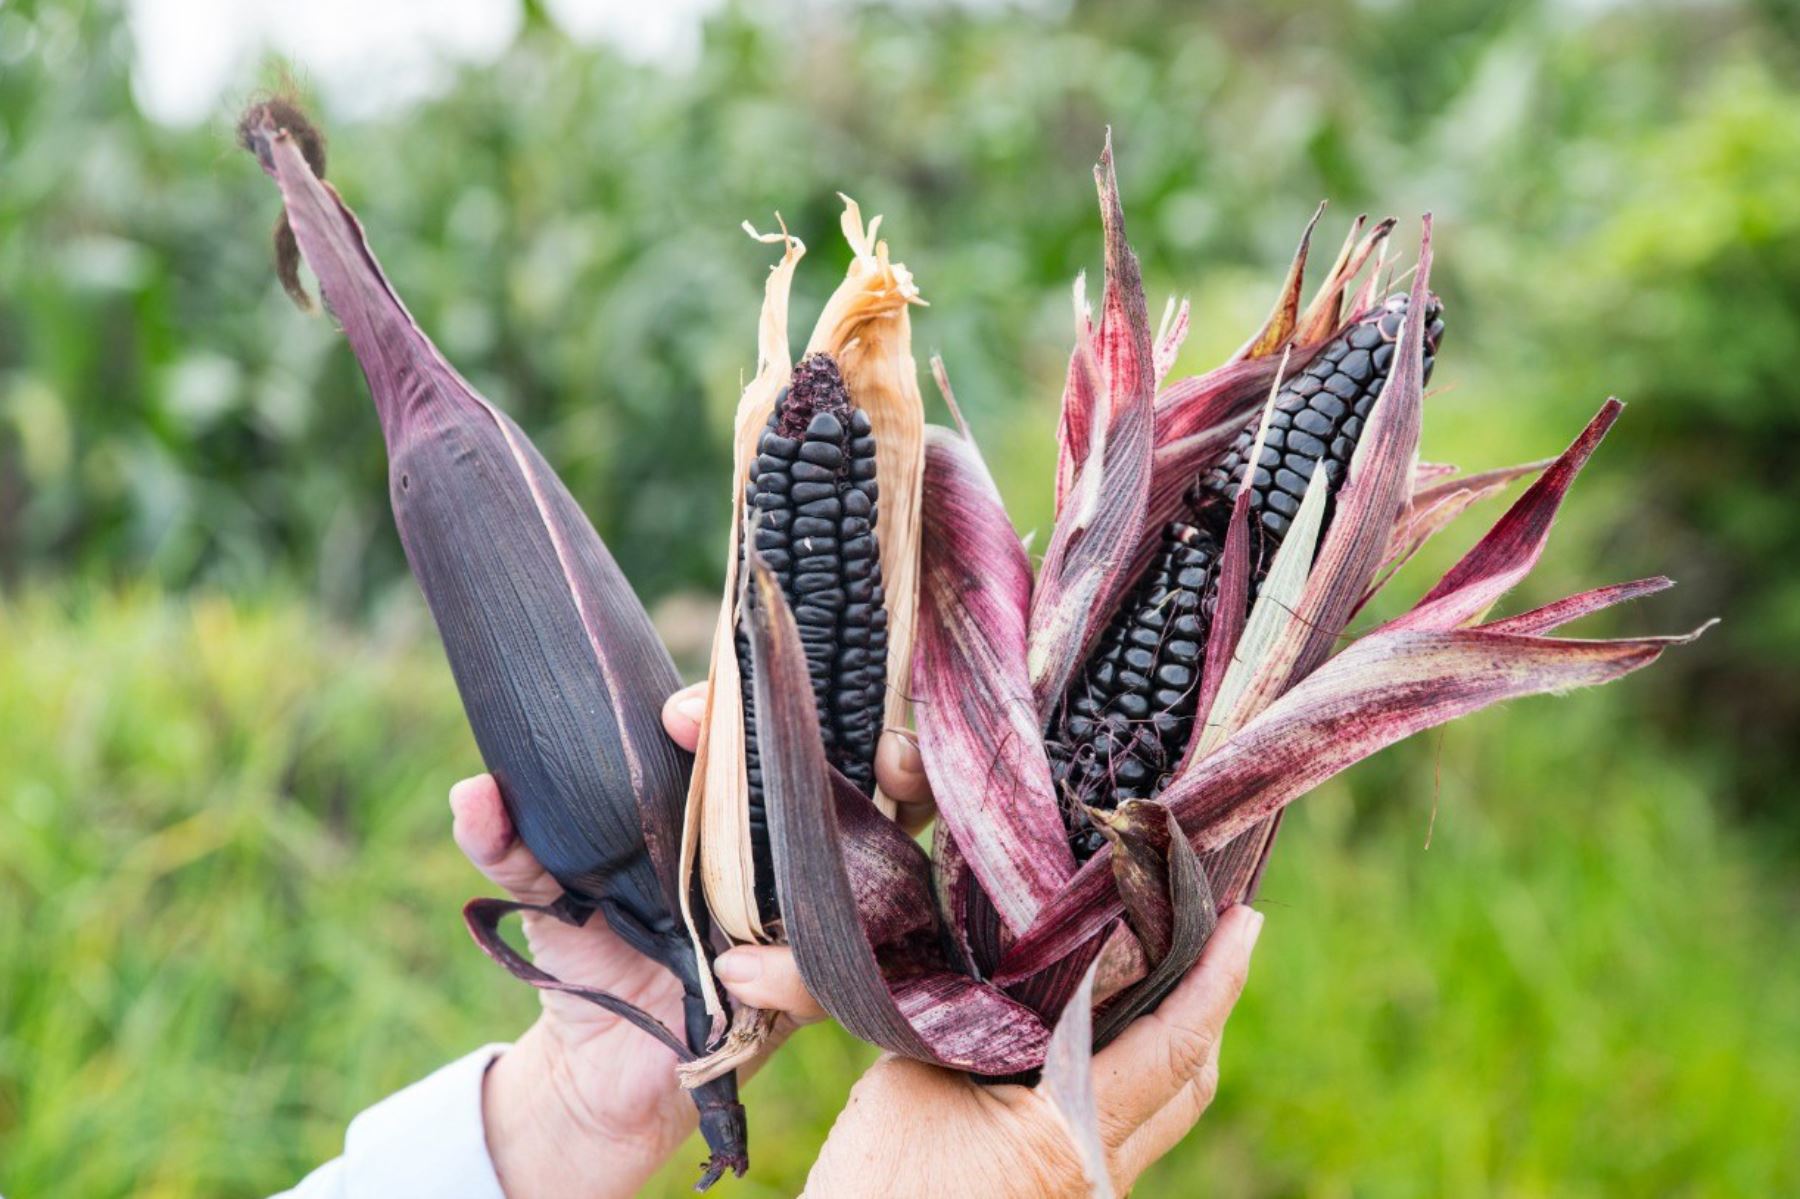 Productores de maíz morado de la región Cajamarca triplican sus cultivos con uso del guano de islas. ANDINA/Difusión